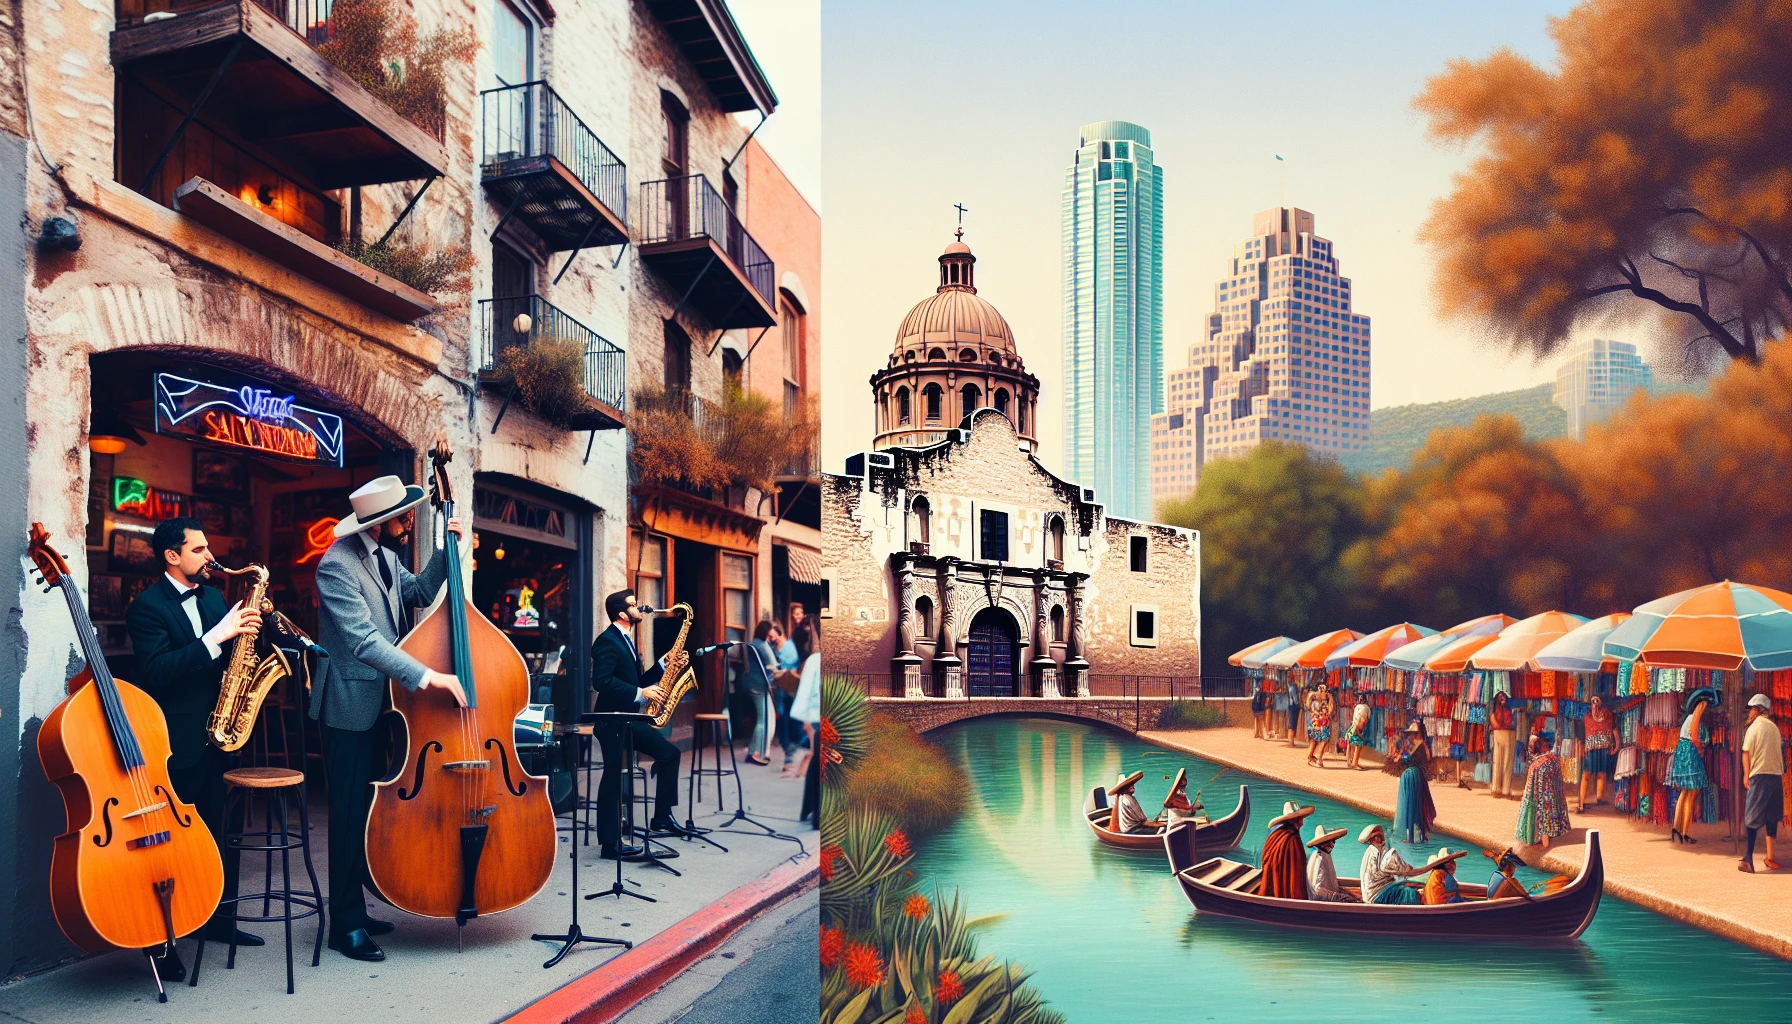 Live music scene in Austin vs cultural heritage in San Antonio